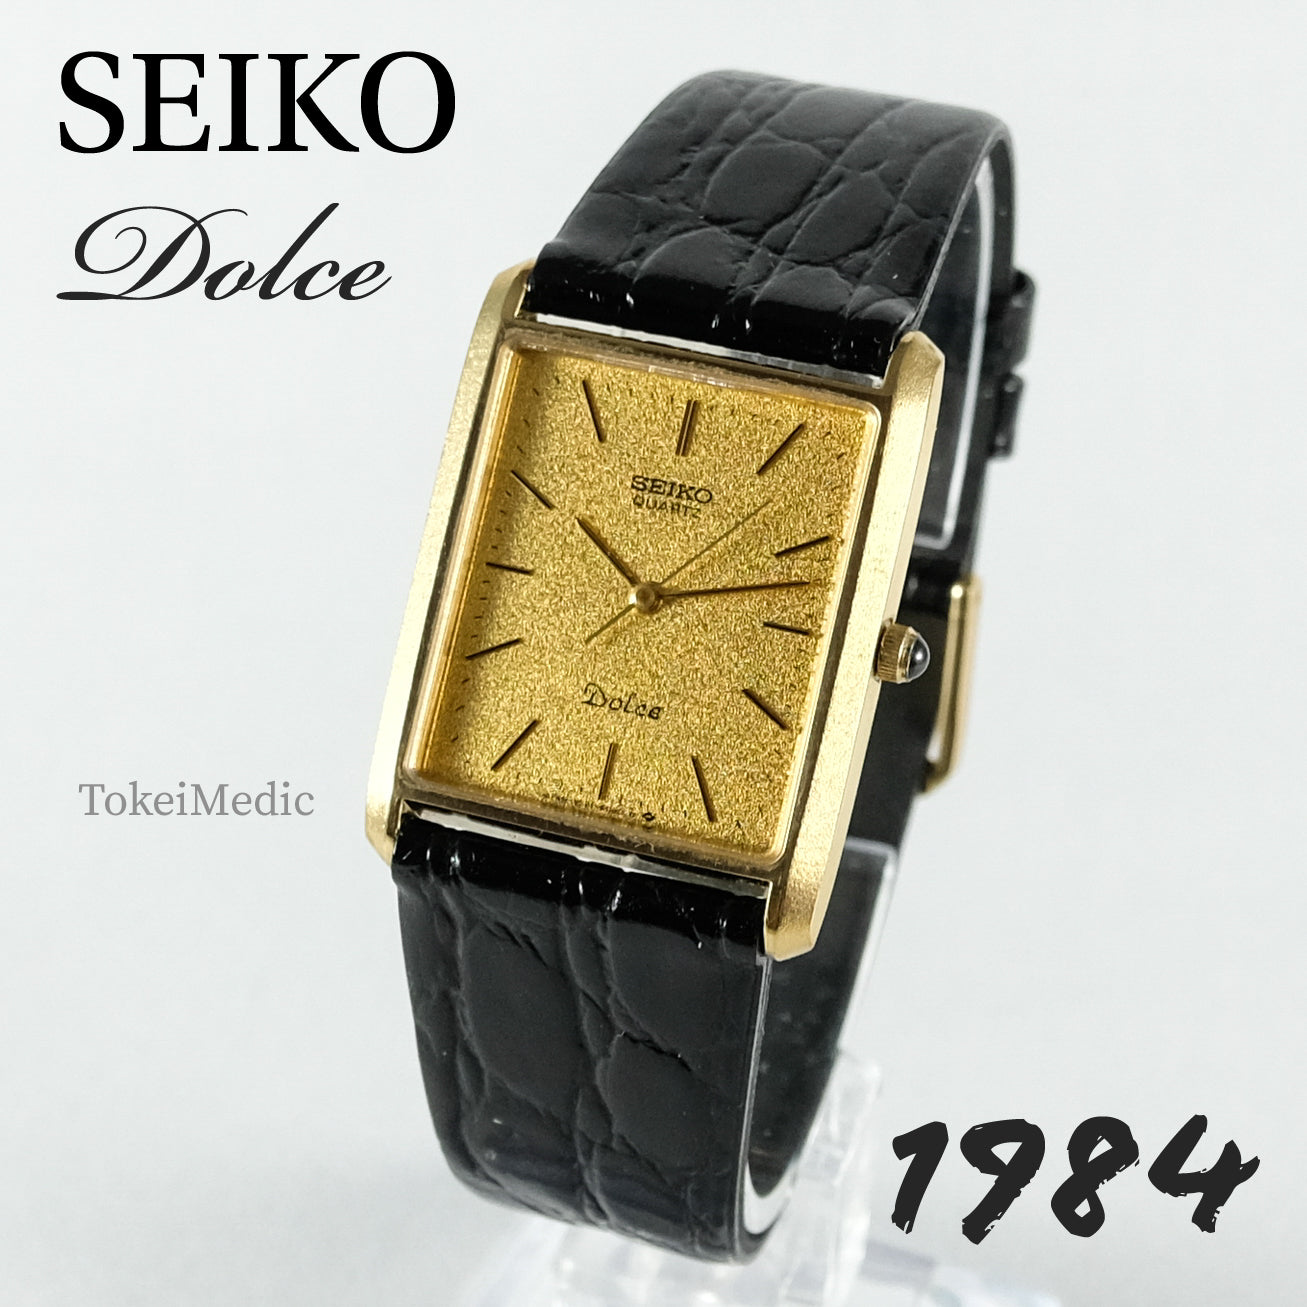 1984 Seiko Dolce 9521-5090